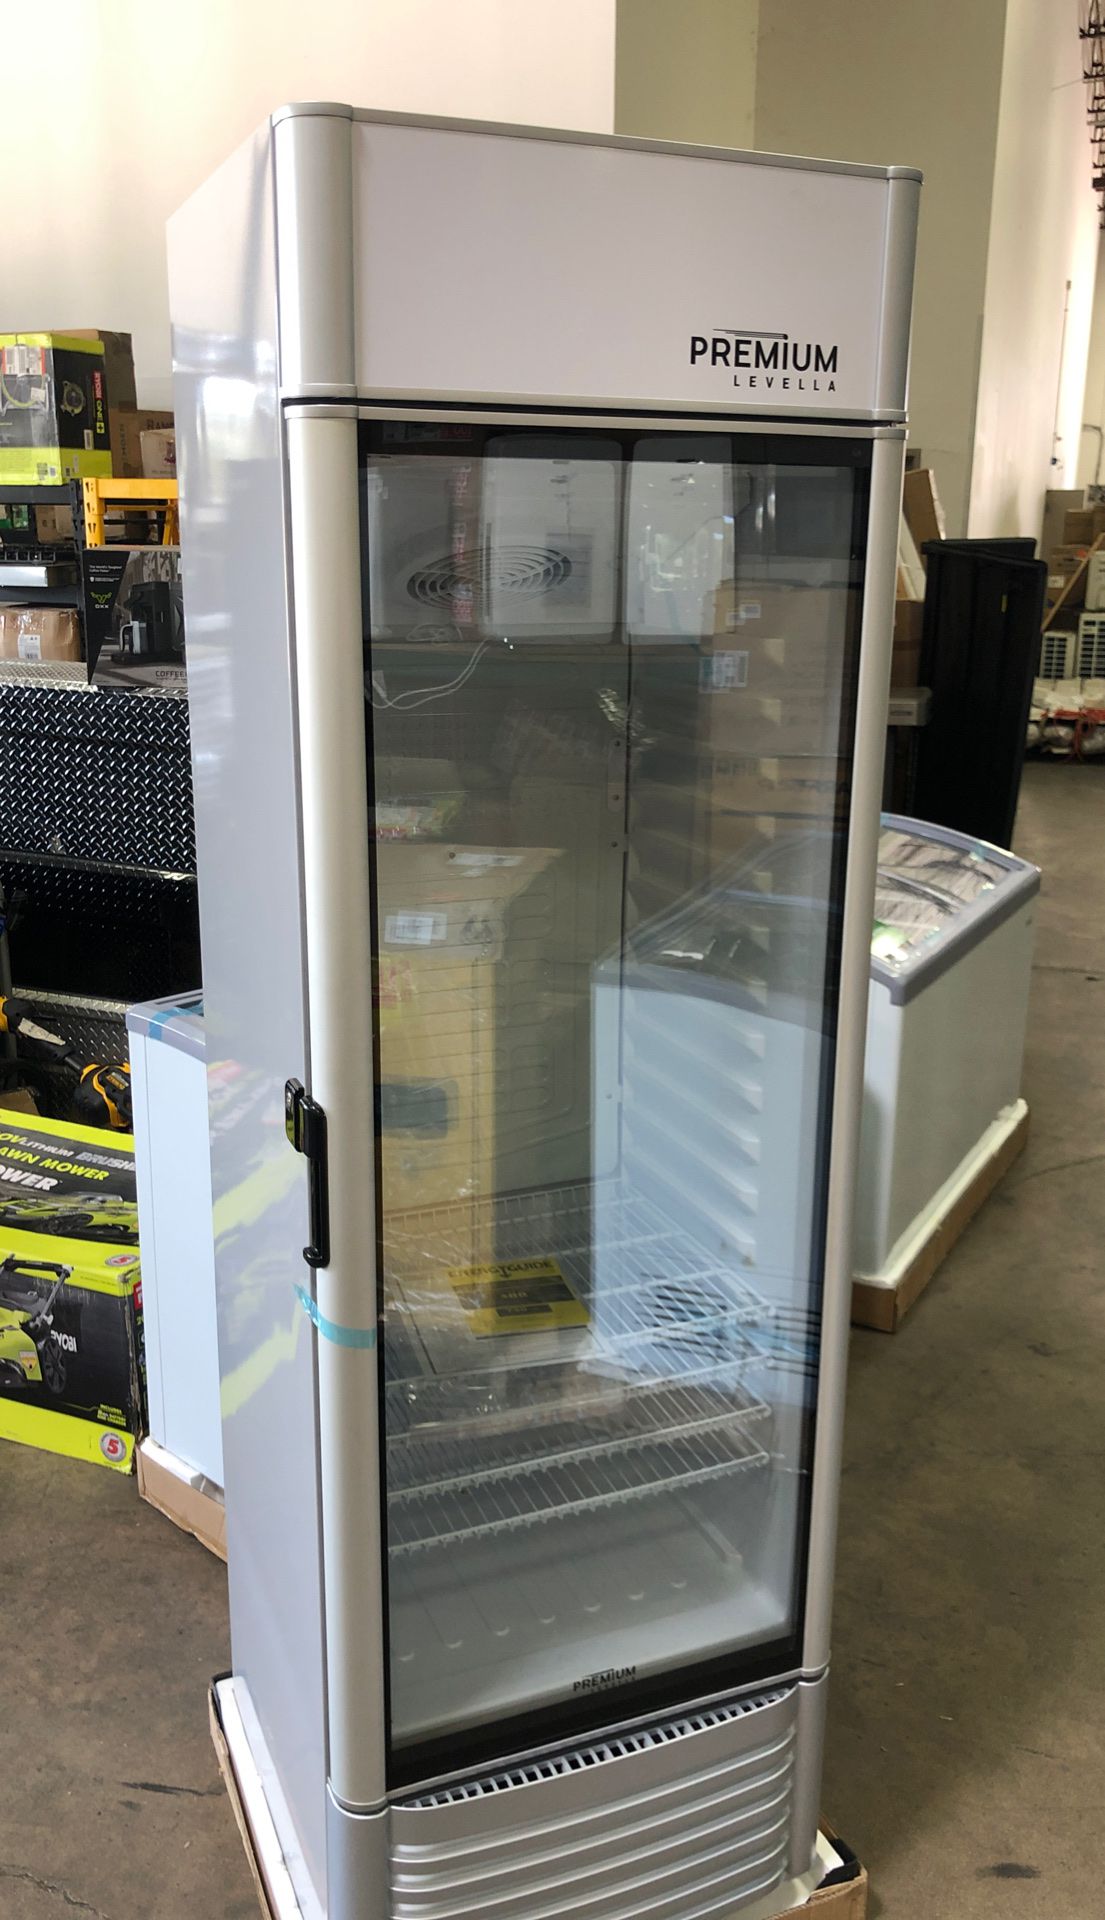 PREMIUM 12.5 cu. ft Single Door Commercial Refrigerator Beverage Cooler in Gray